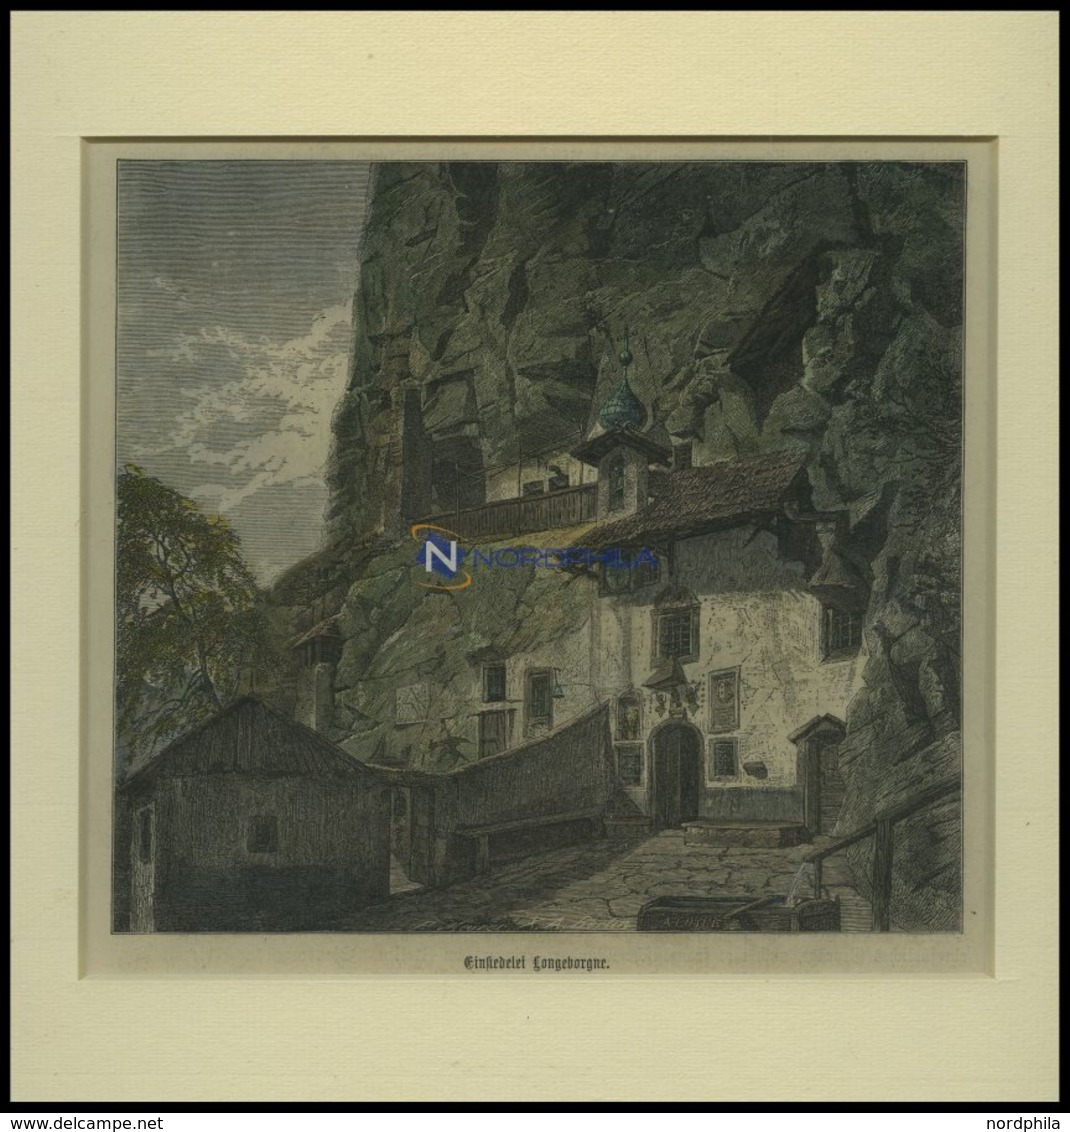 BORGNE: Einsiedelei Longeborgne, Kolorierter Holzstich Um 1880 - Lithographies